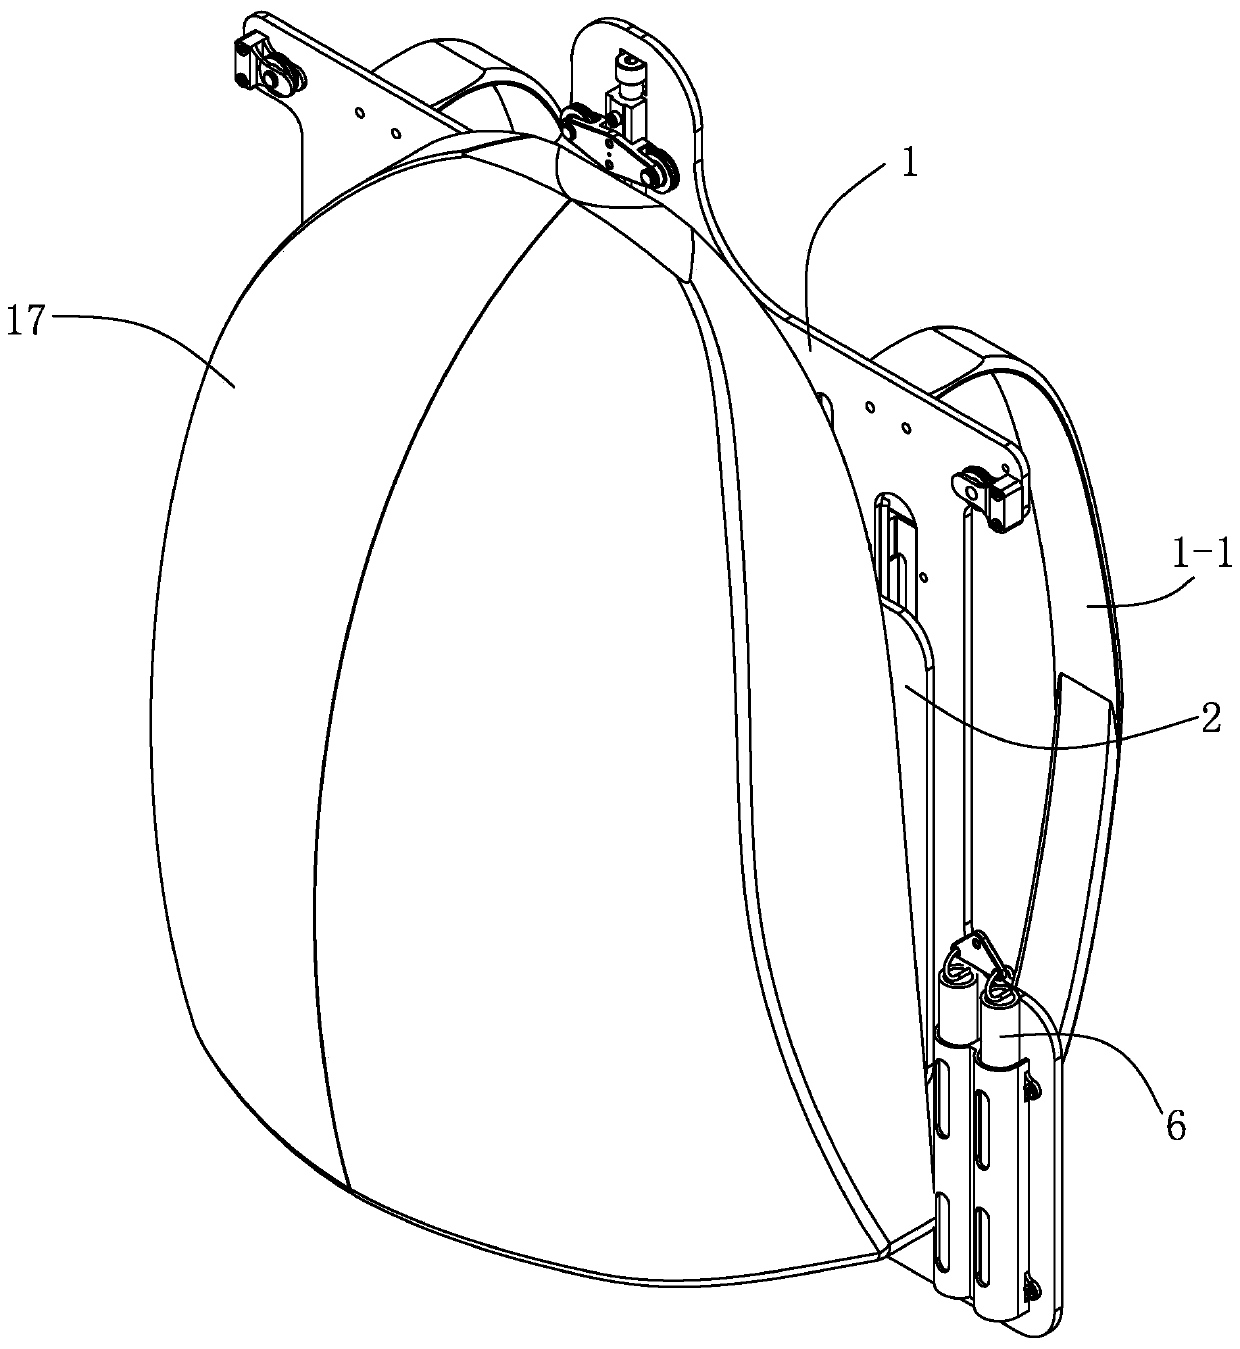 Load-adjustable suspension backpack device